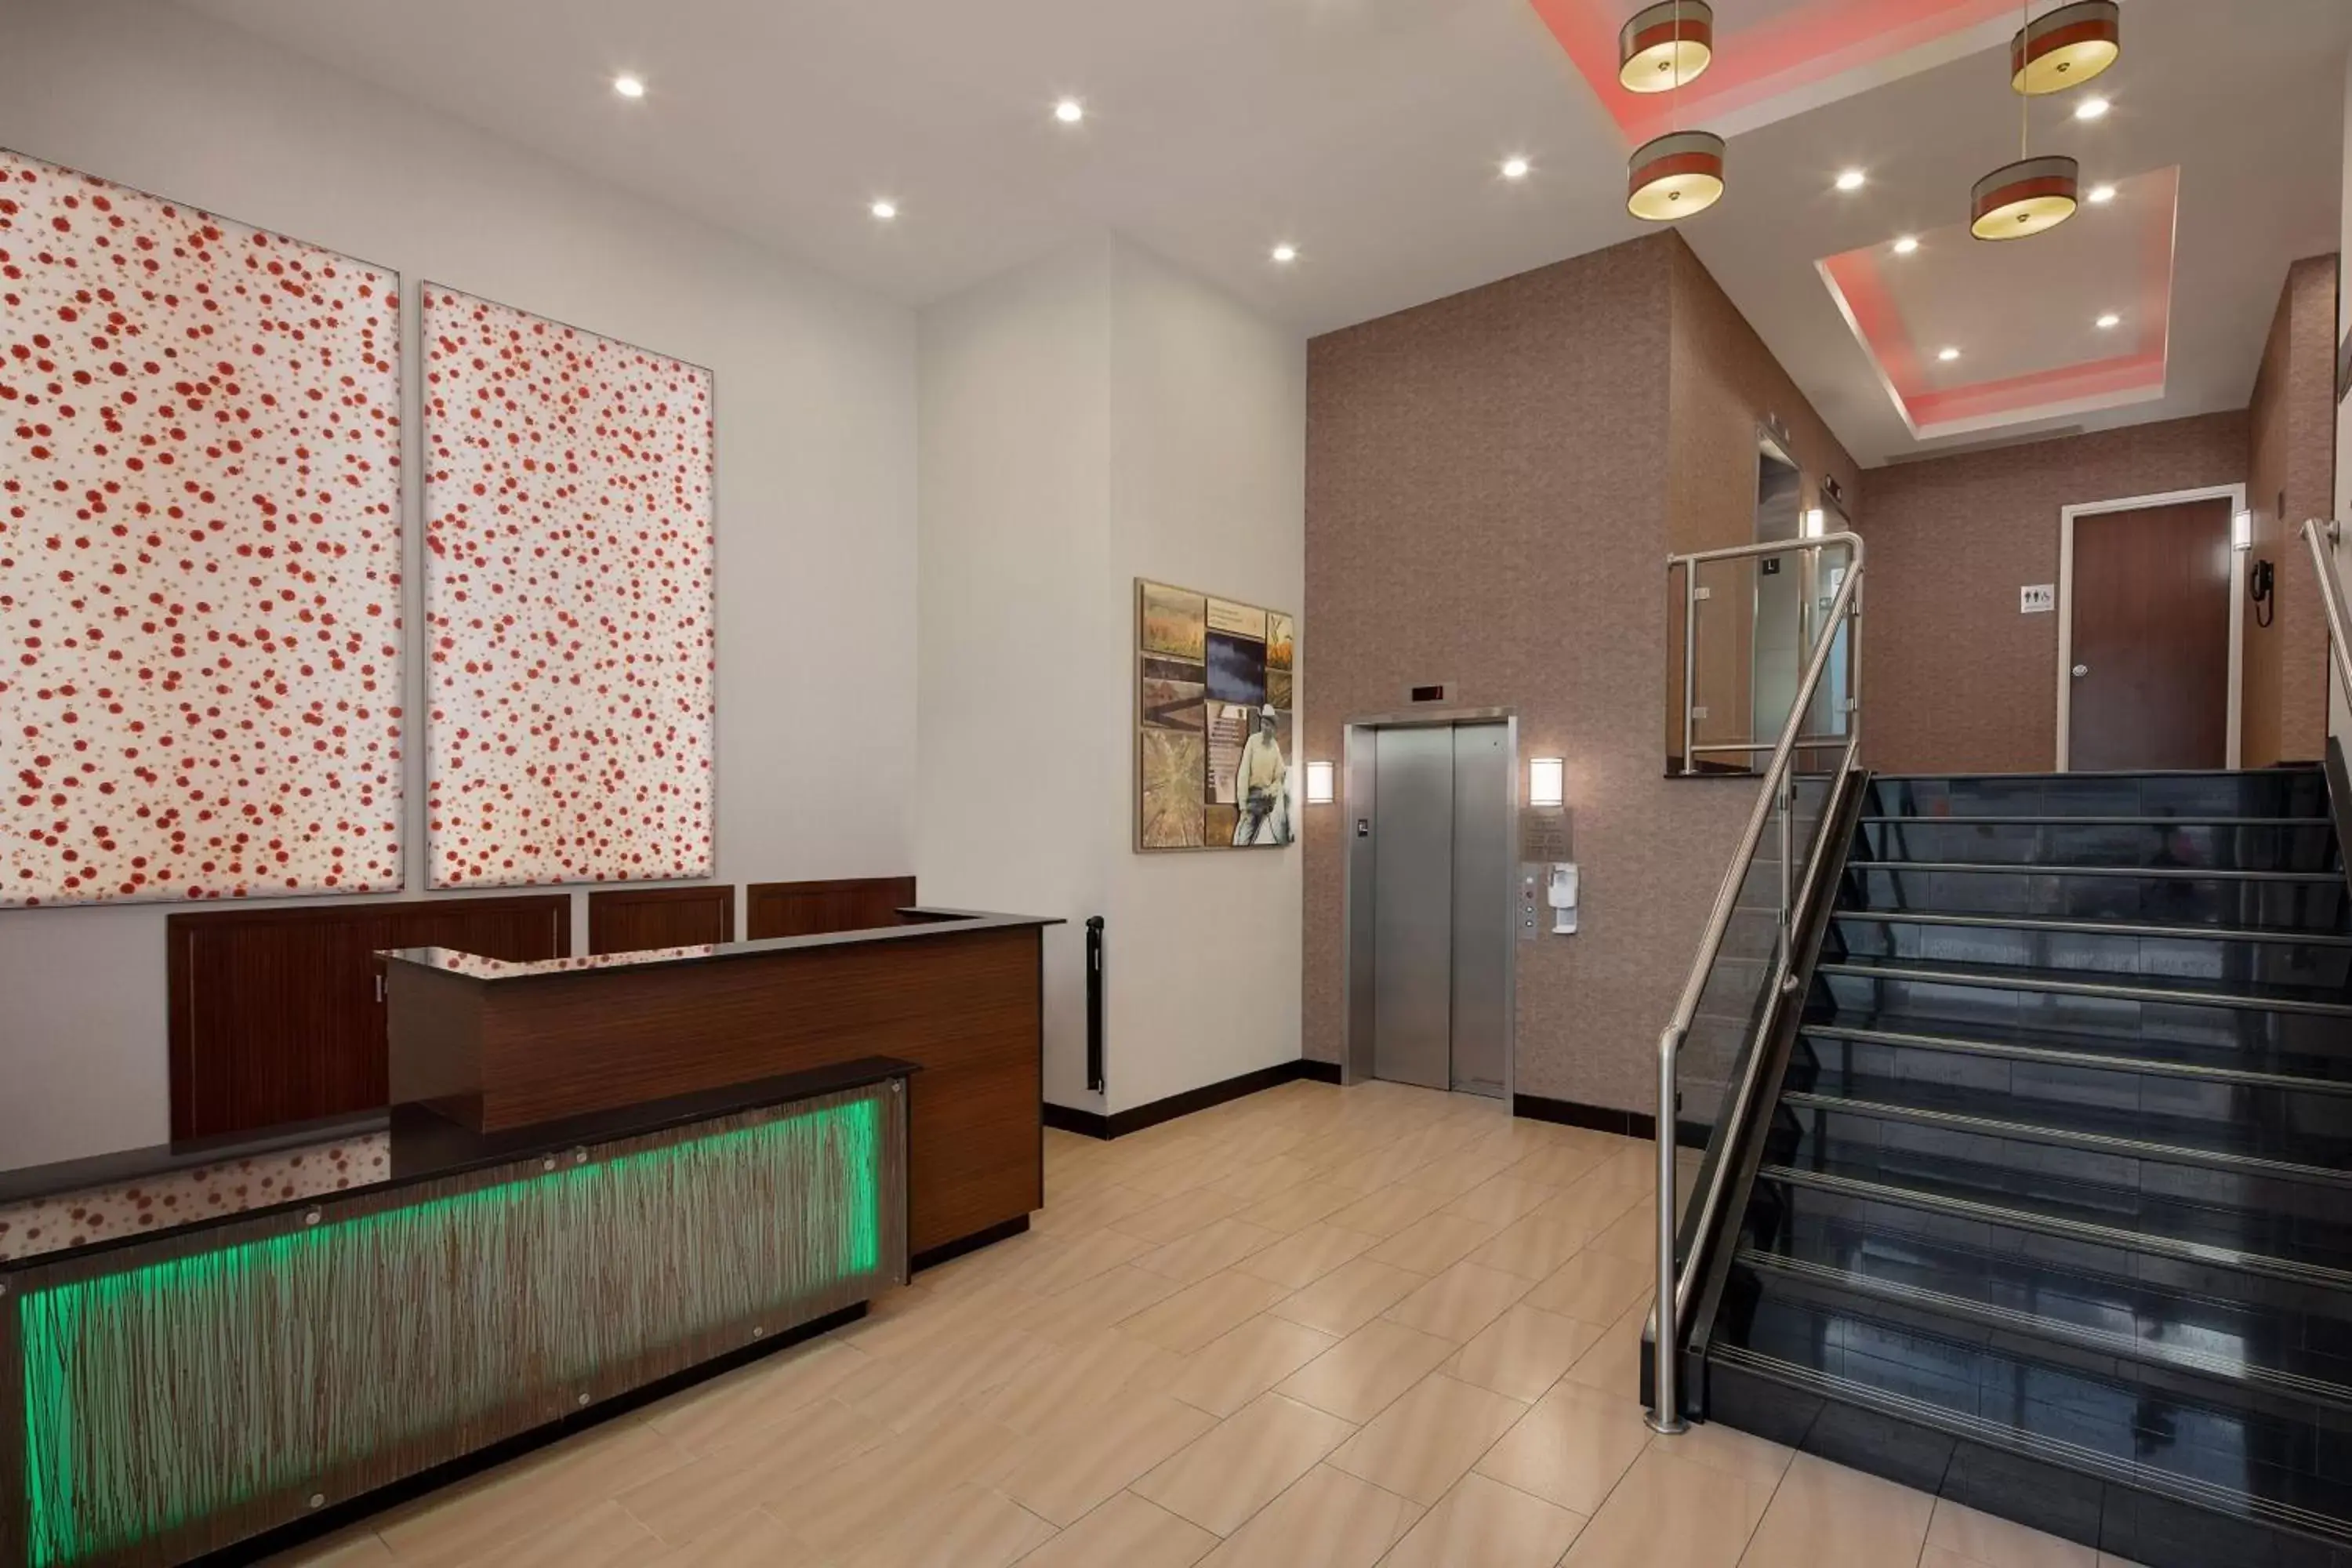 Lobby or reception, Lobby/Reception in Fairfield Inn & Suites New York Manhattan/Downtown East